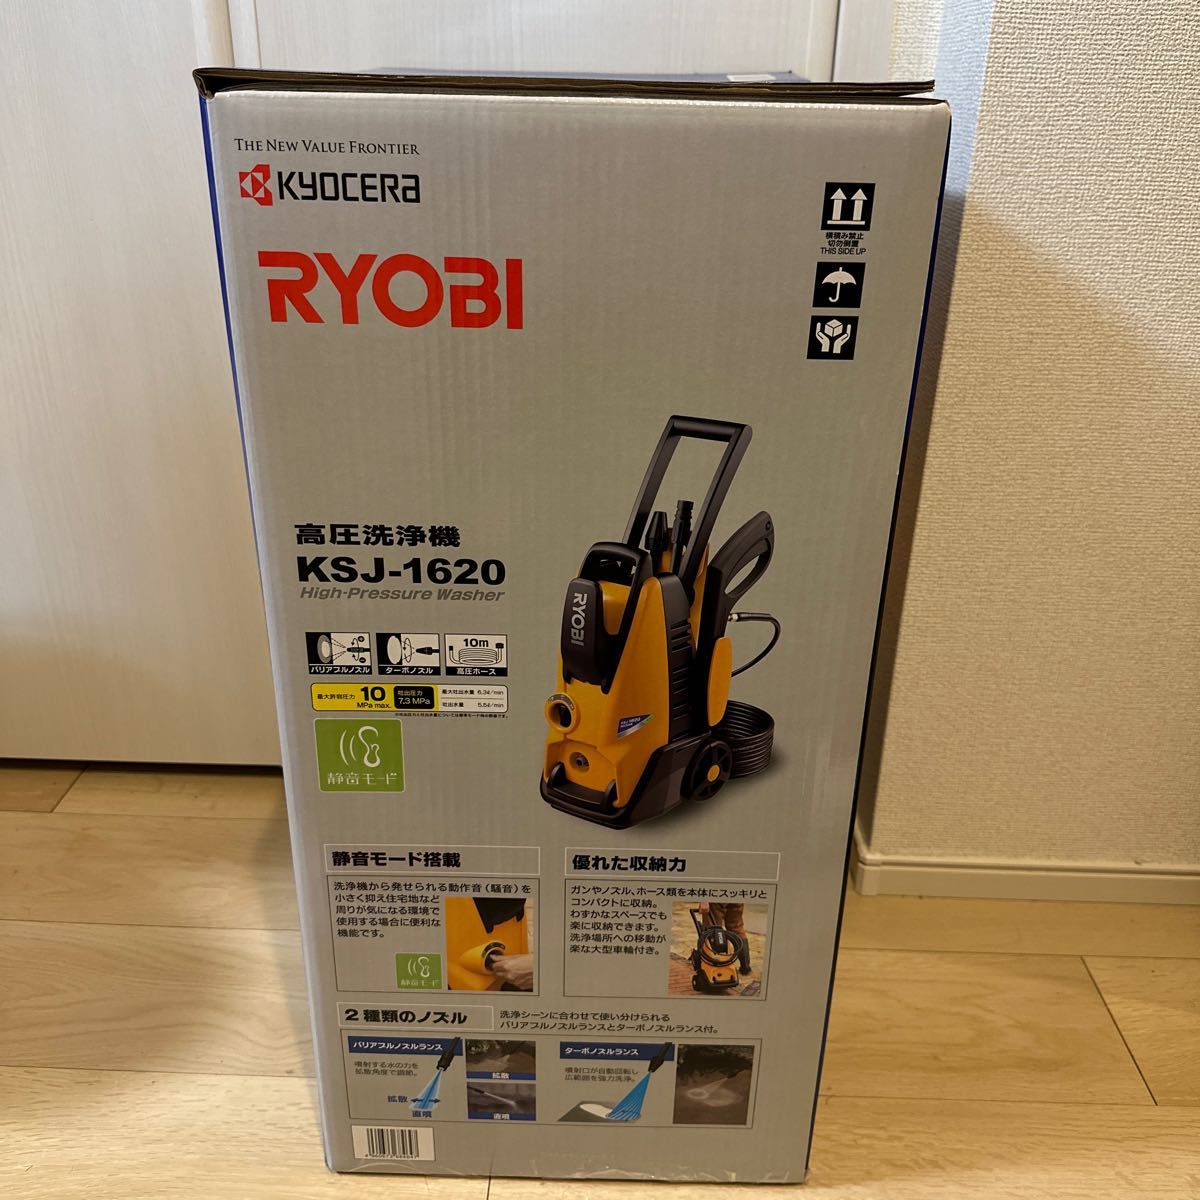 【新品保証付き】RYOBI(リョービ)高圧洗浄機 KSJ-1620 静音モード搭載